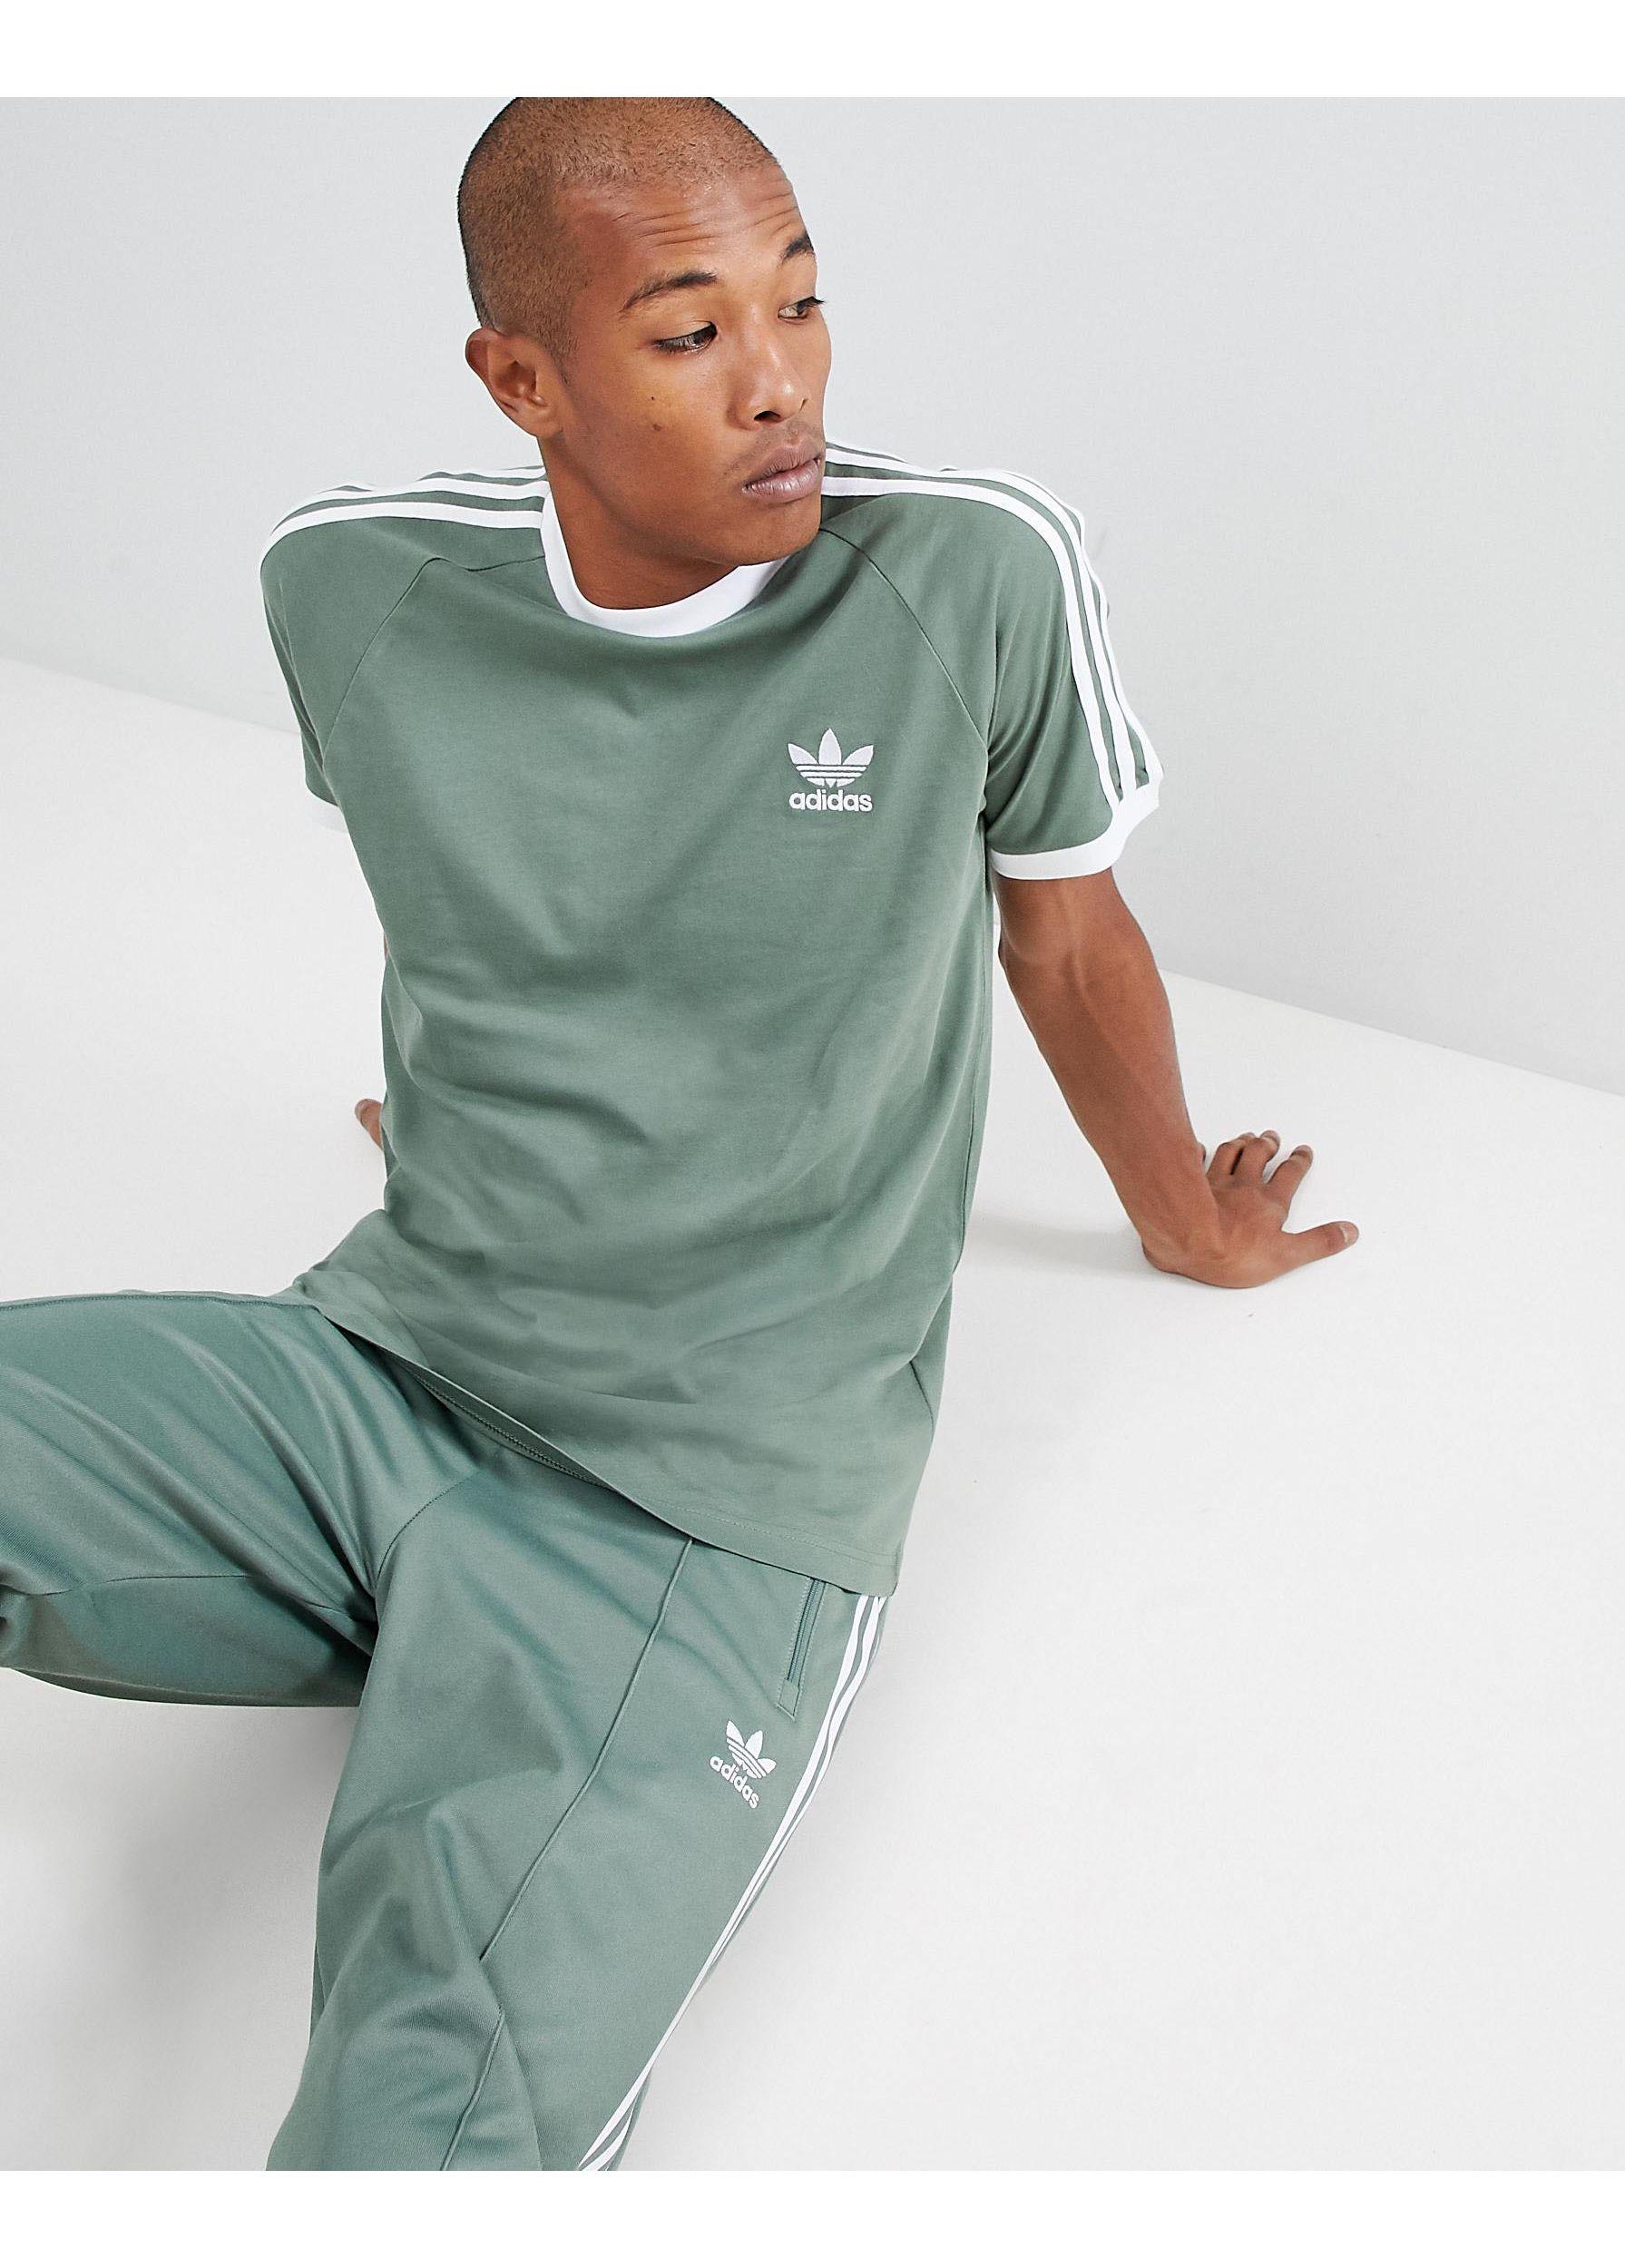 adidas Originals – California – es T-Shirt, DV2553 in Grün für Herren |  Lyst AT